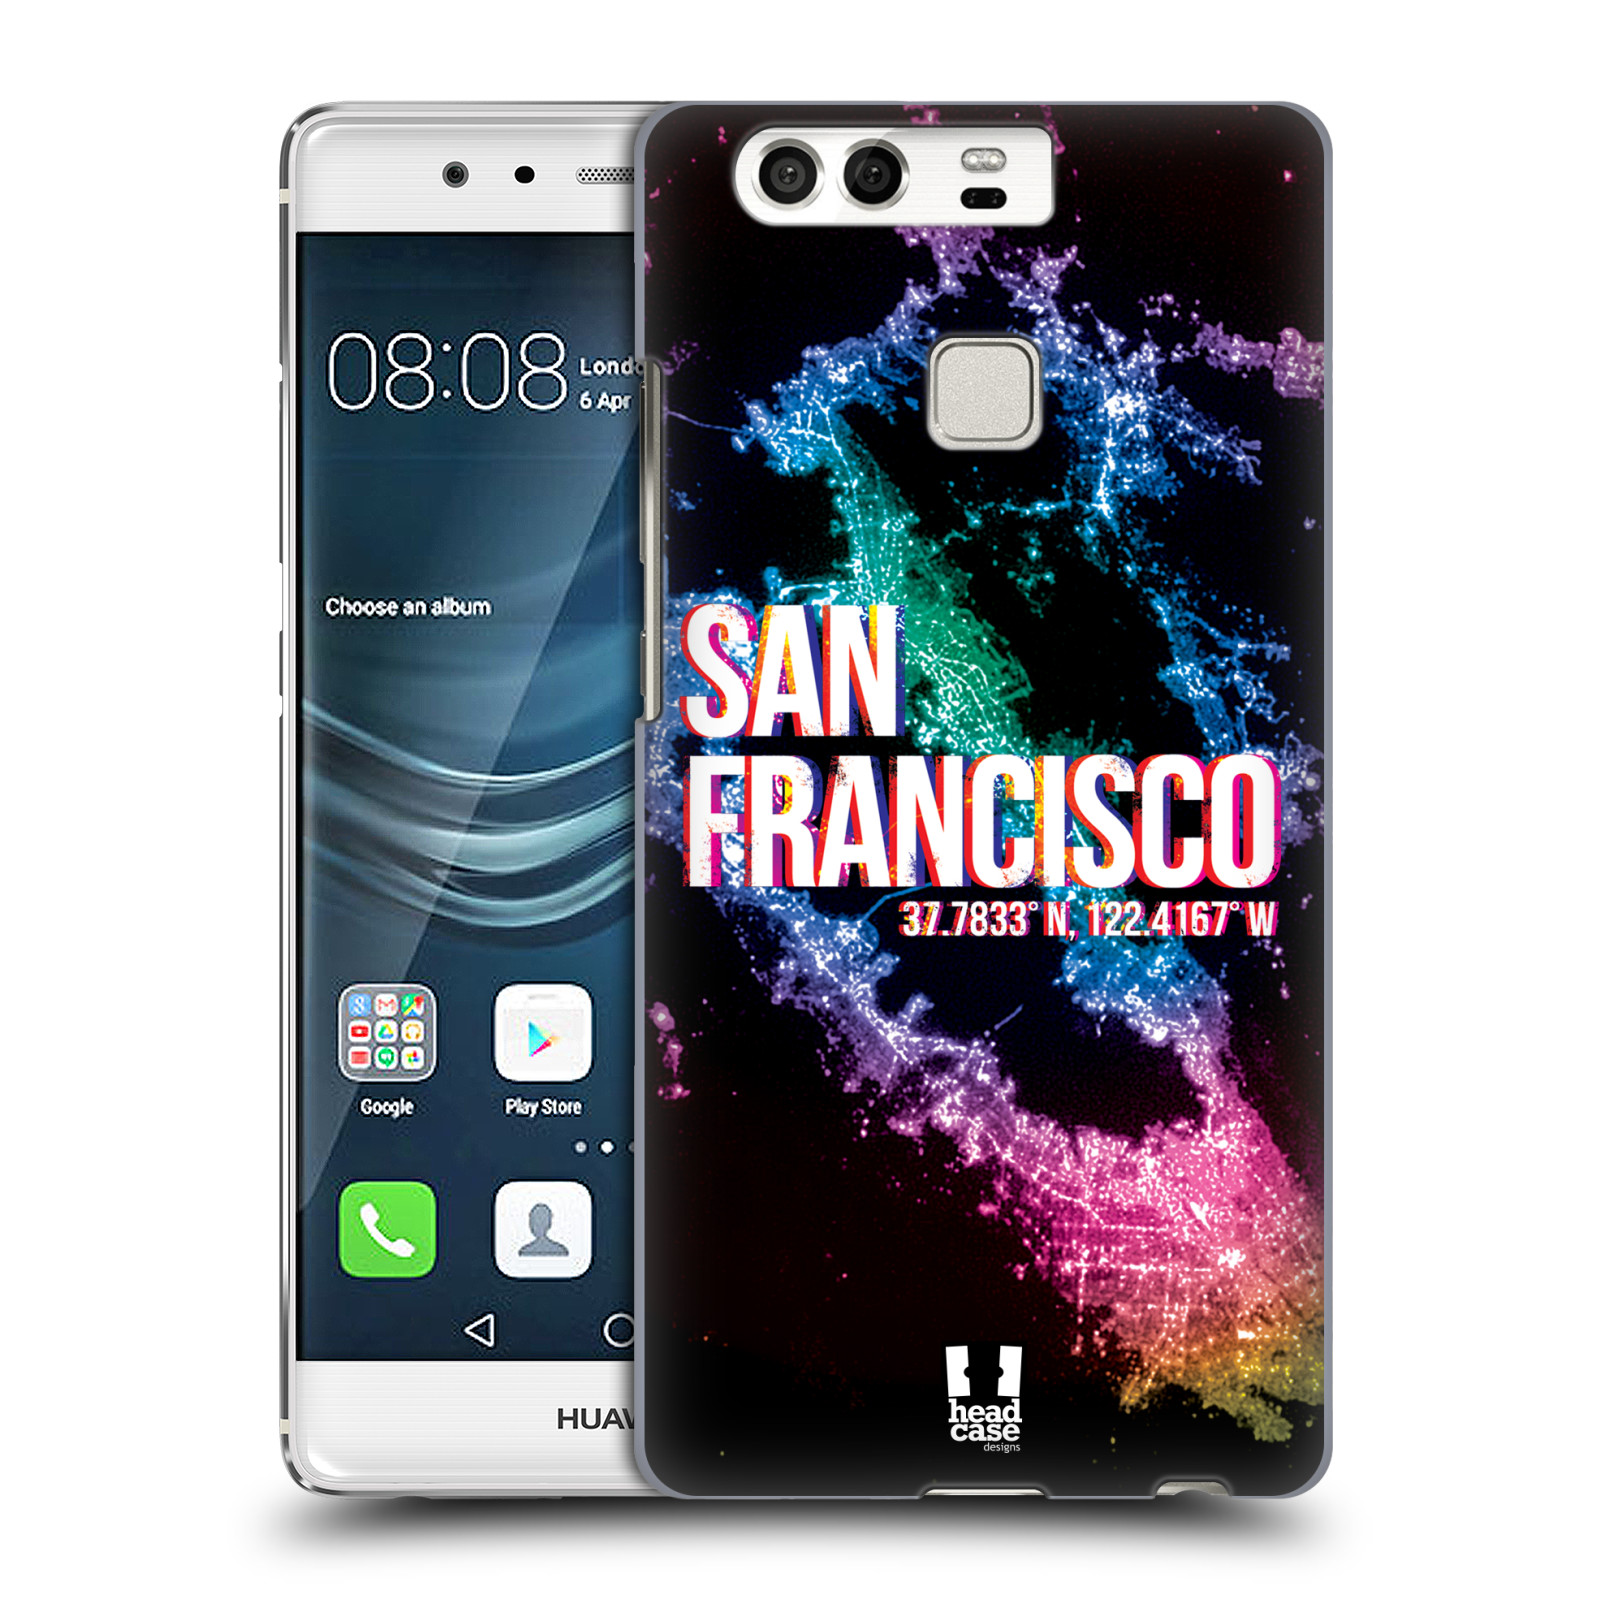 HEAD CASE plastový obal na mobil Huawei P9 / P9 DUAL SIM vzor Světla známých měst, Satelitní snímky USA, SAN FRANCISCO